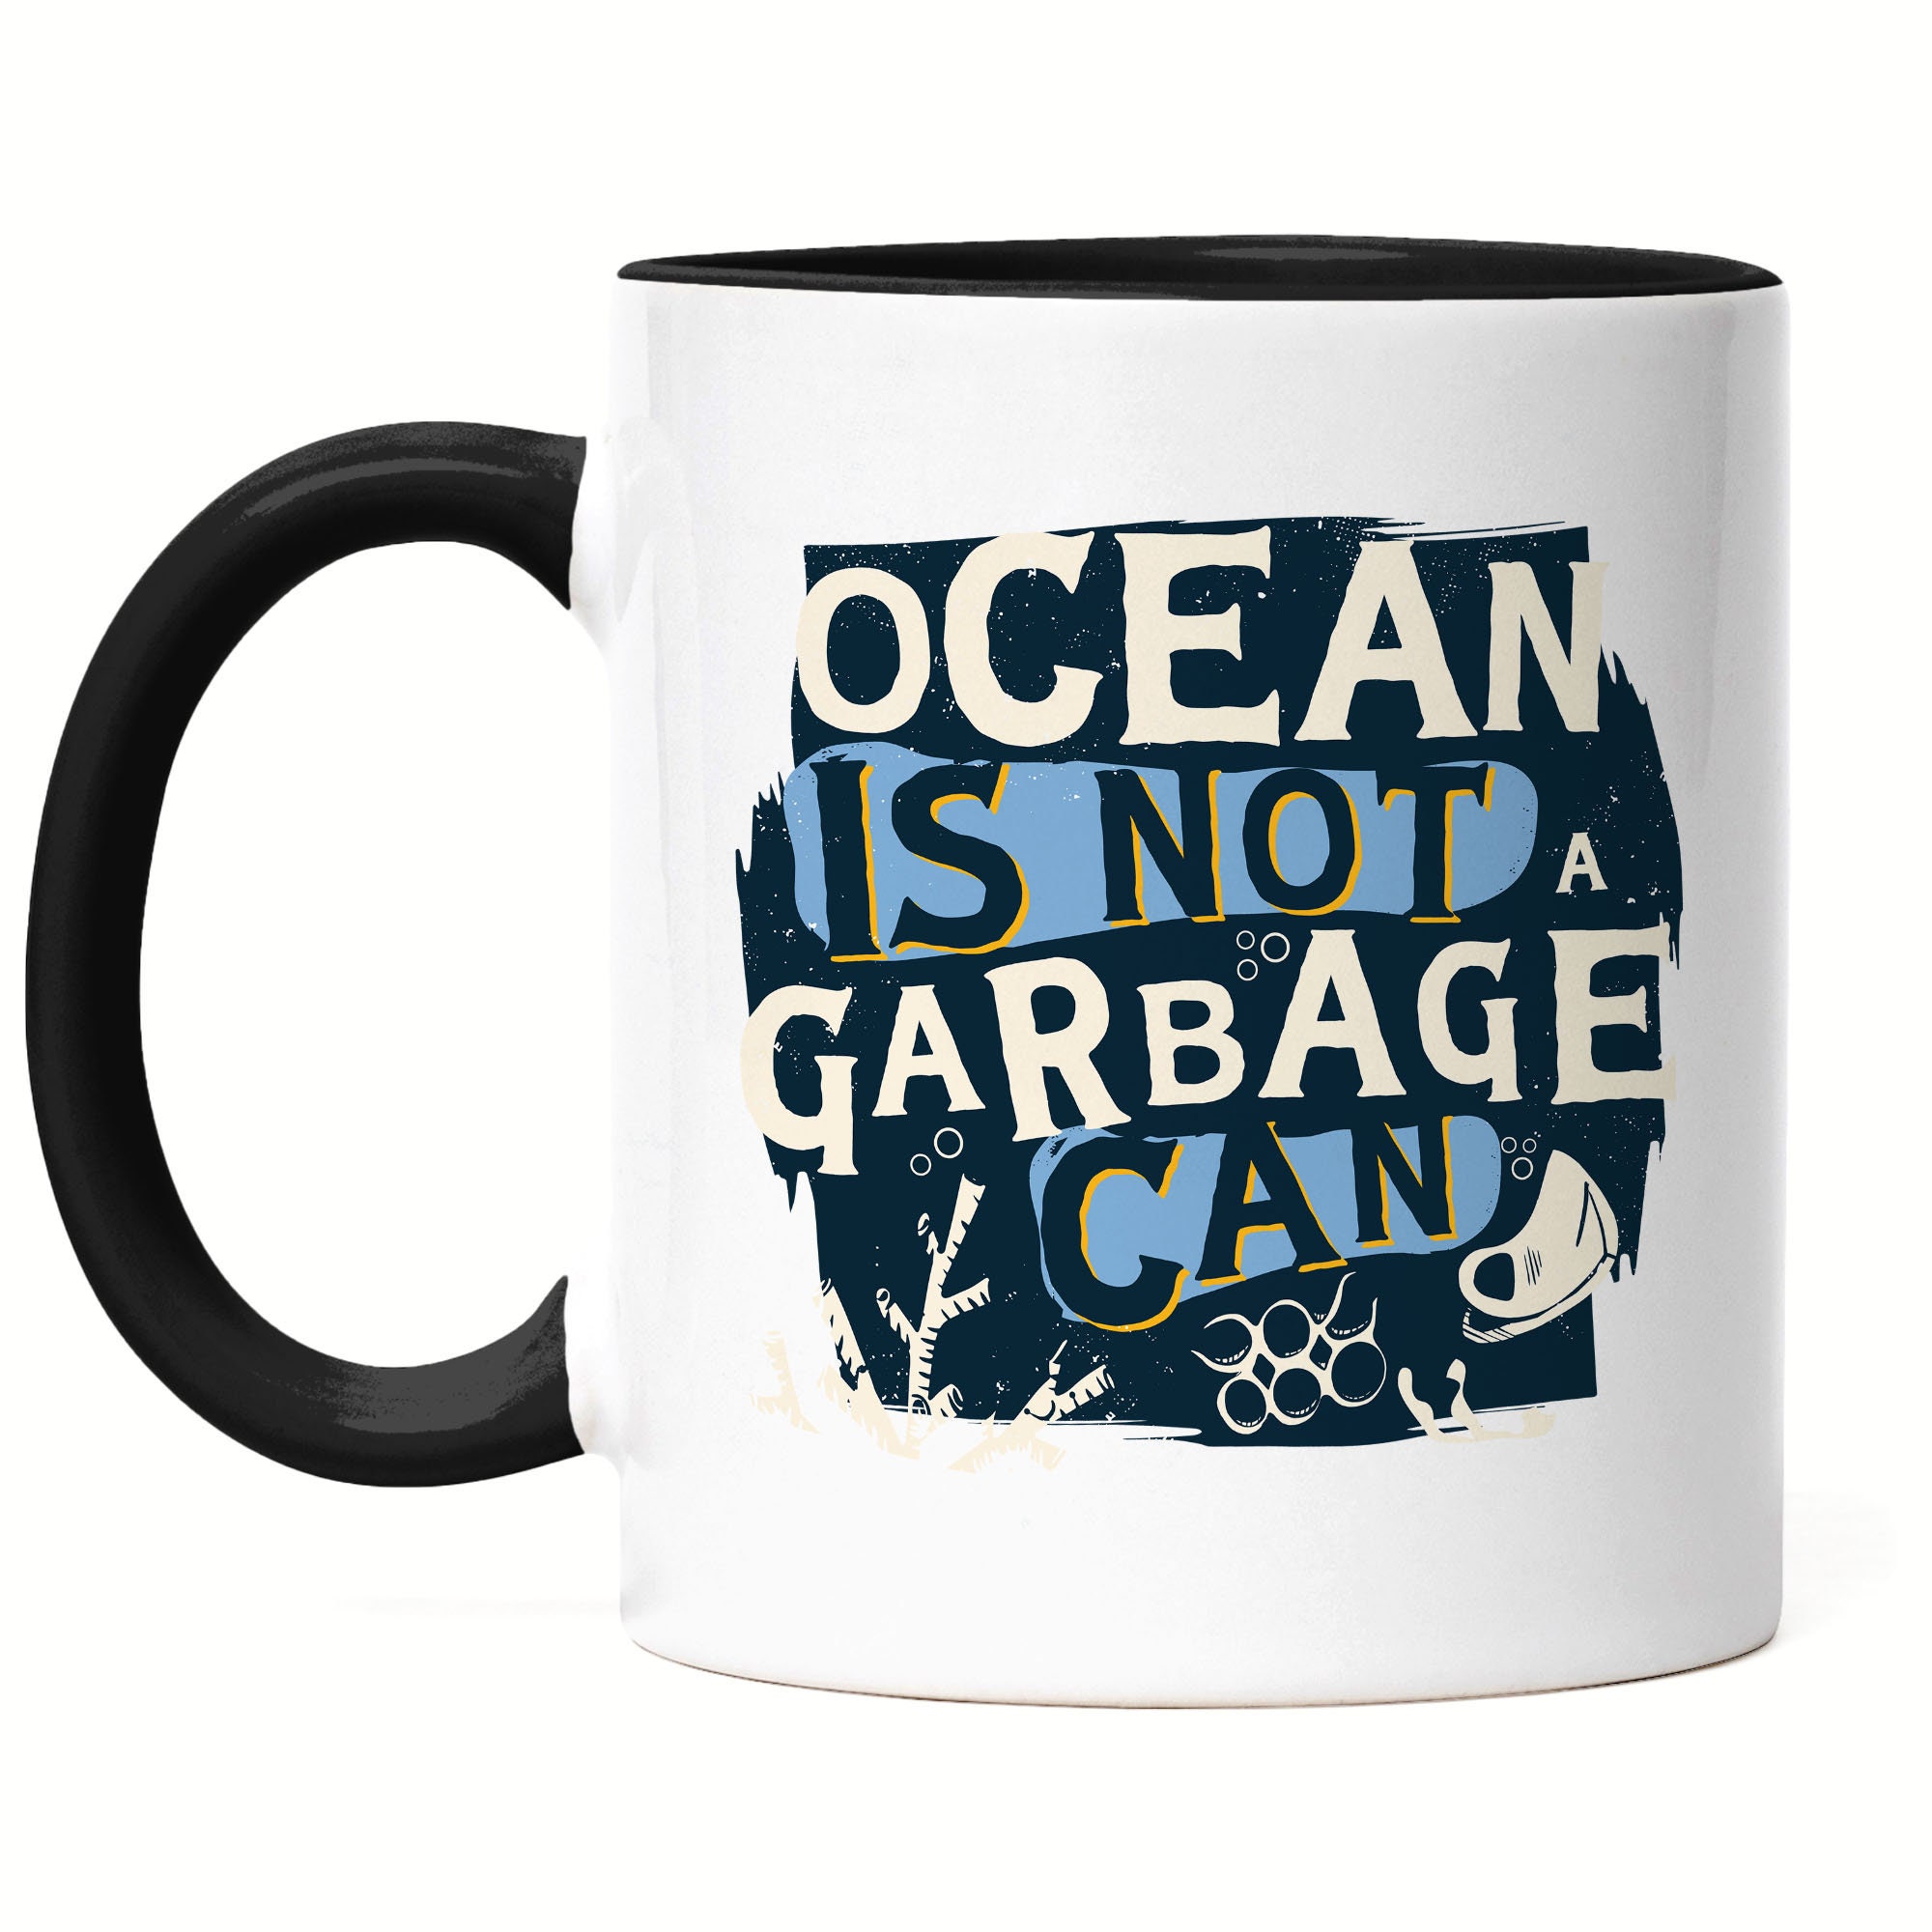 Garbage can mug - .de